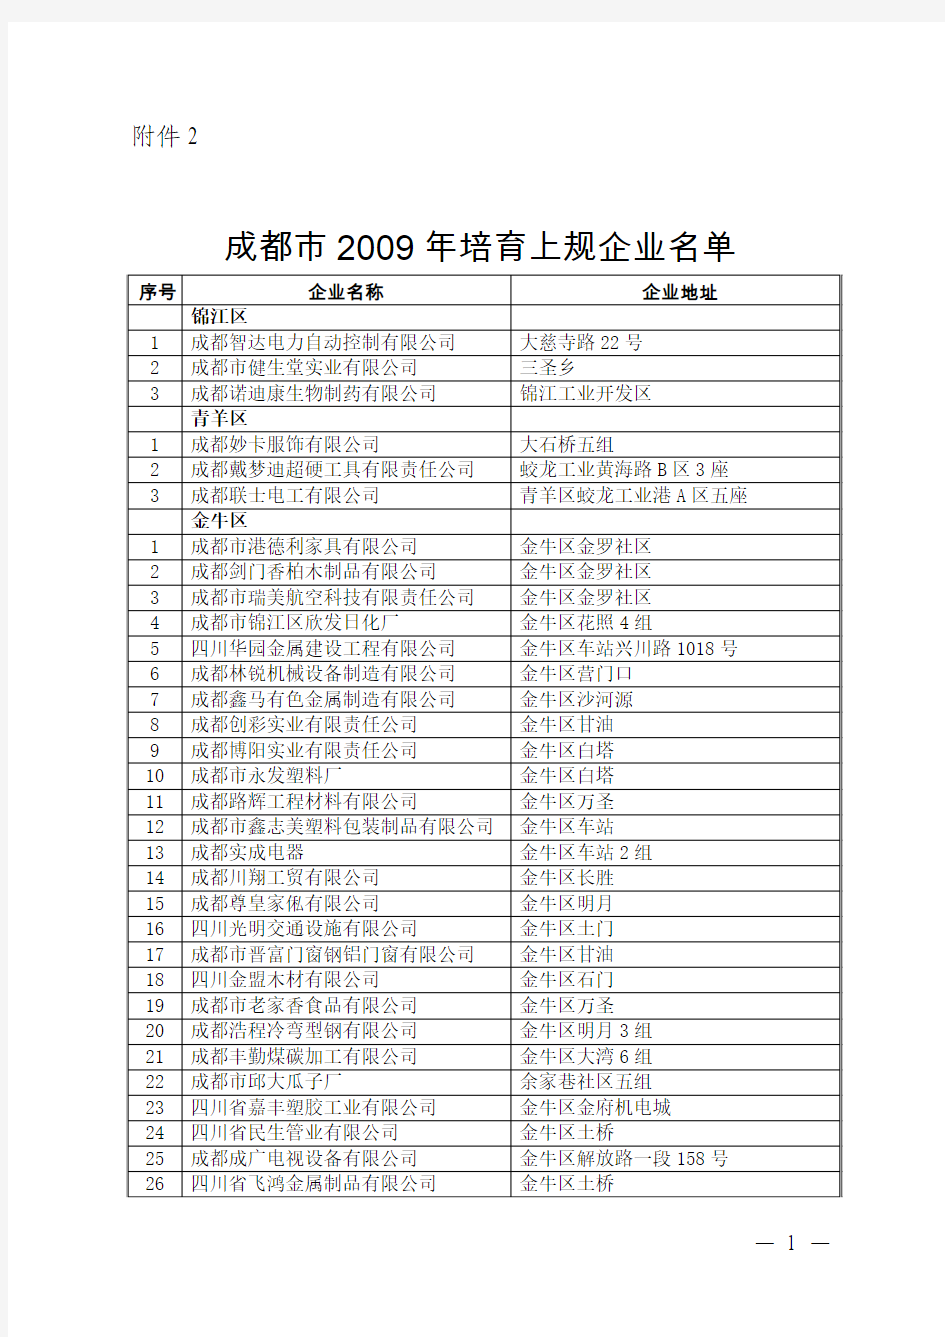 成都市2009年培育上规企业名单